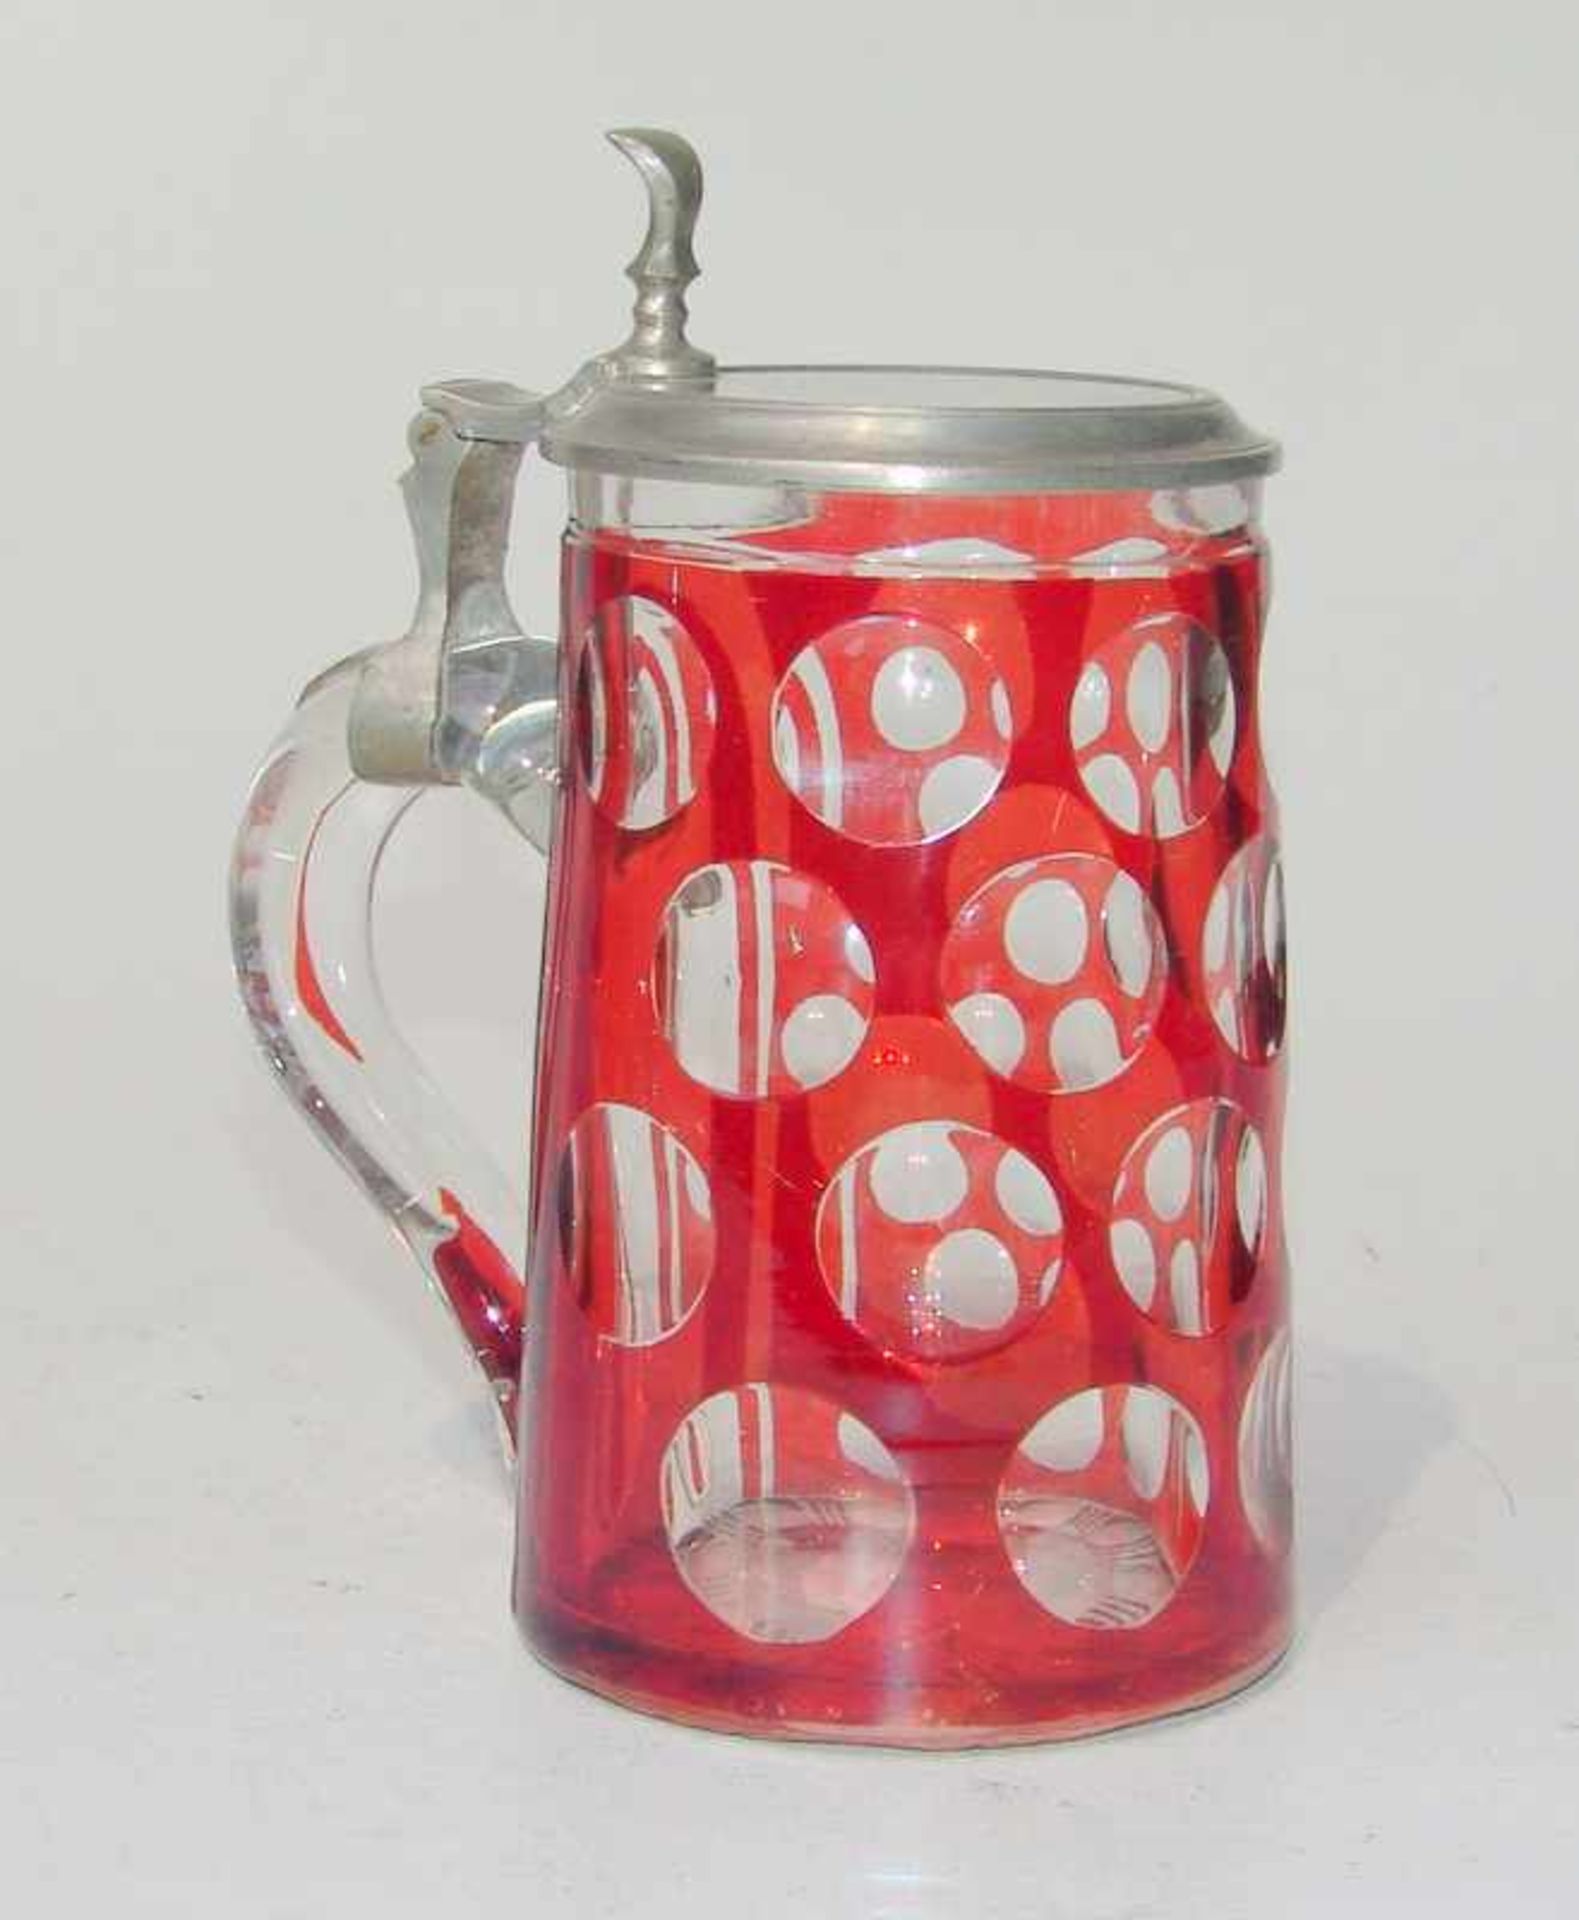 Deckelkrug, Böhmen, um 1870 farbloses Glas partiell rot gebeizt, zylindrischer, leicht konisch